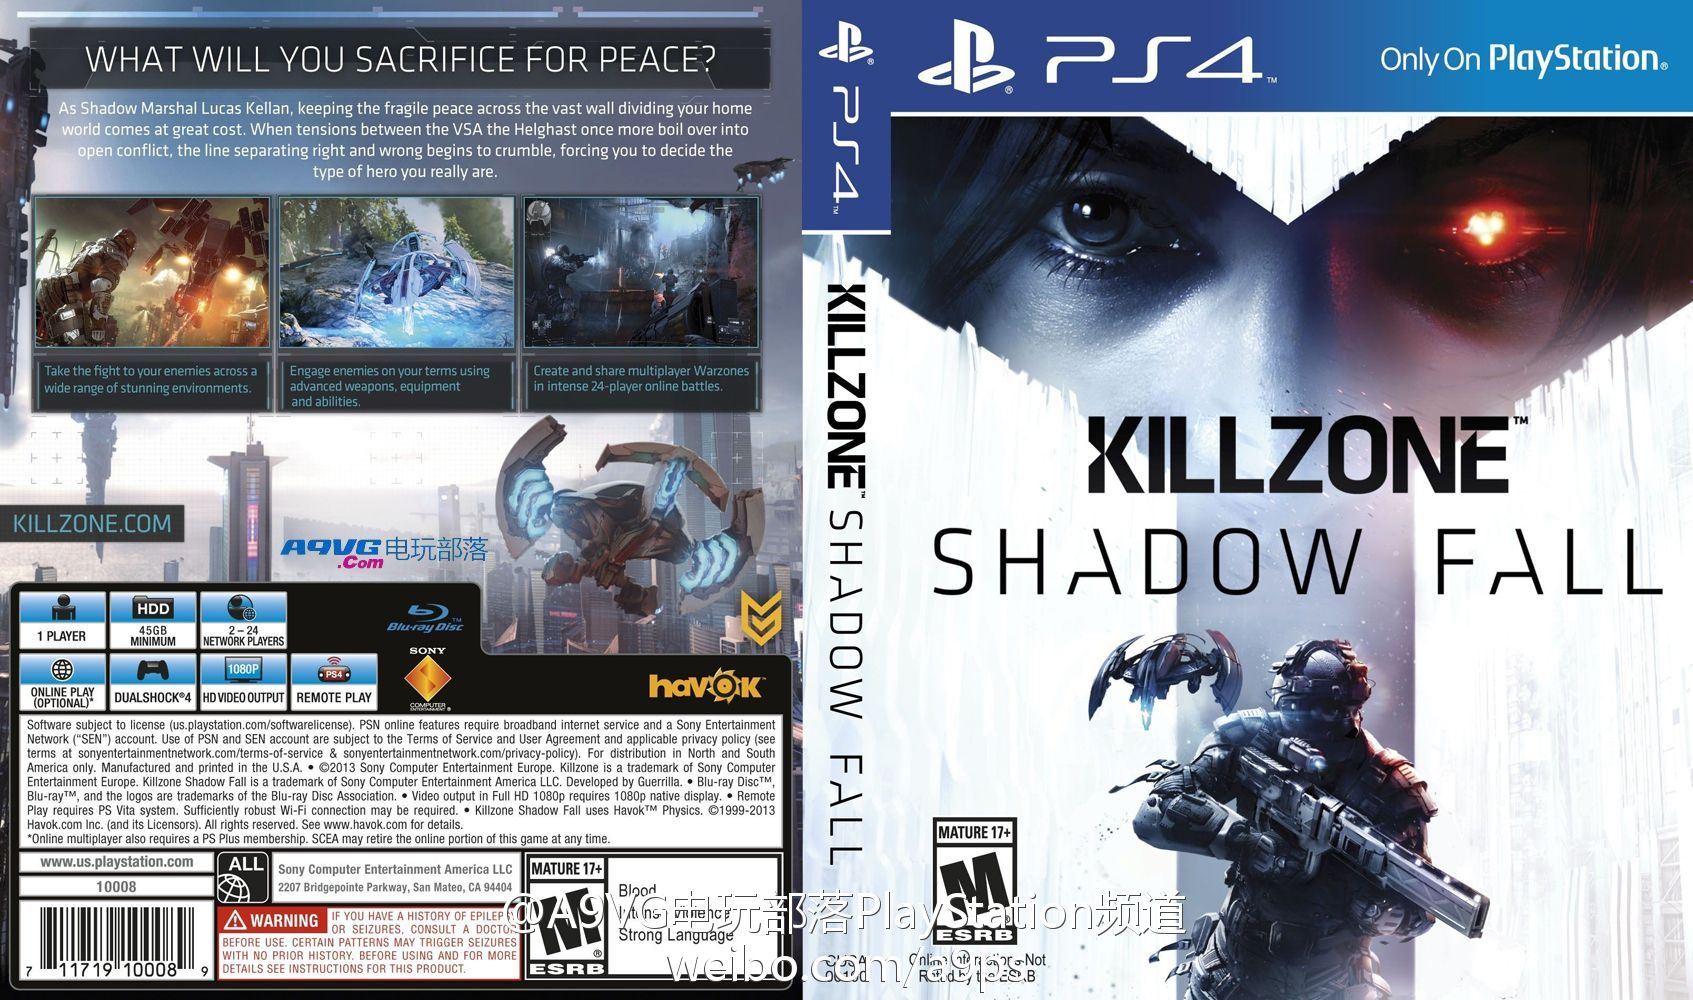 Killzone - PS3 vs PS4 